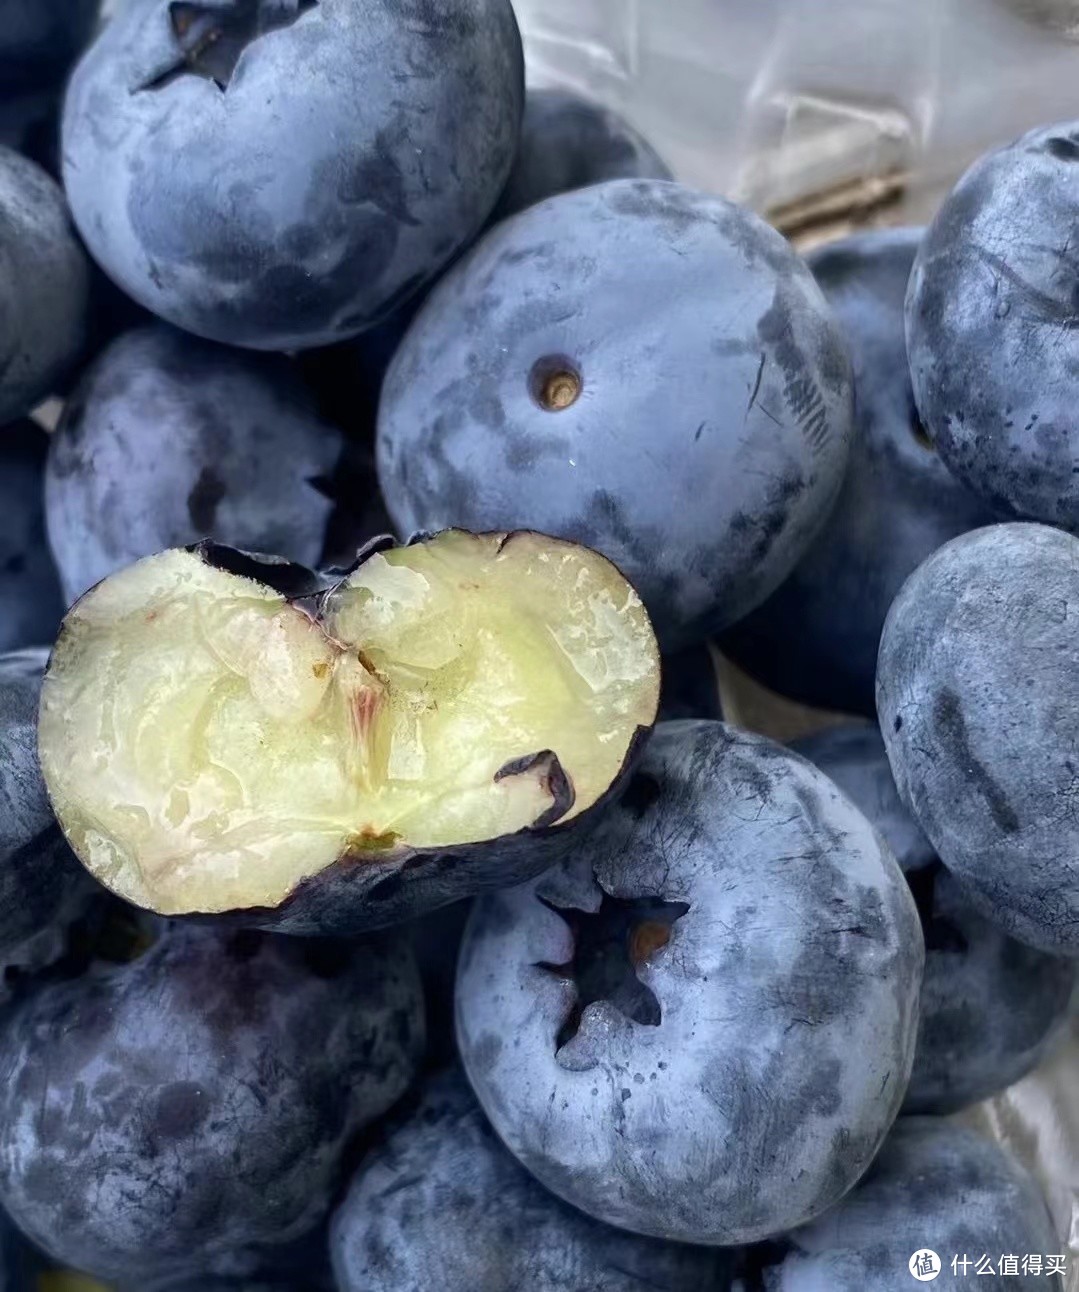 挑选蓝莓是越大越好吗？